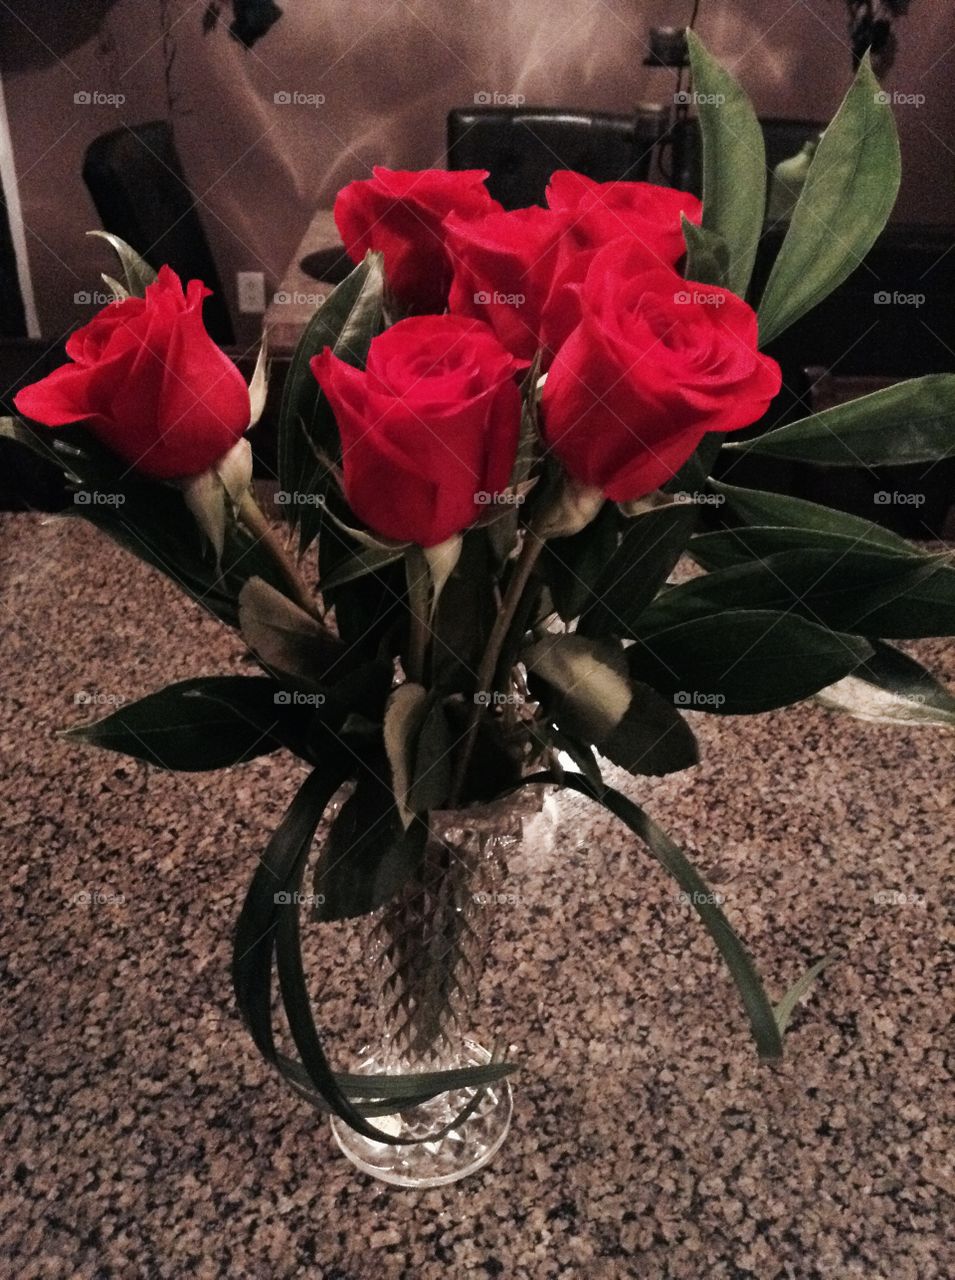 Vase full of roses